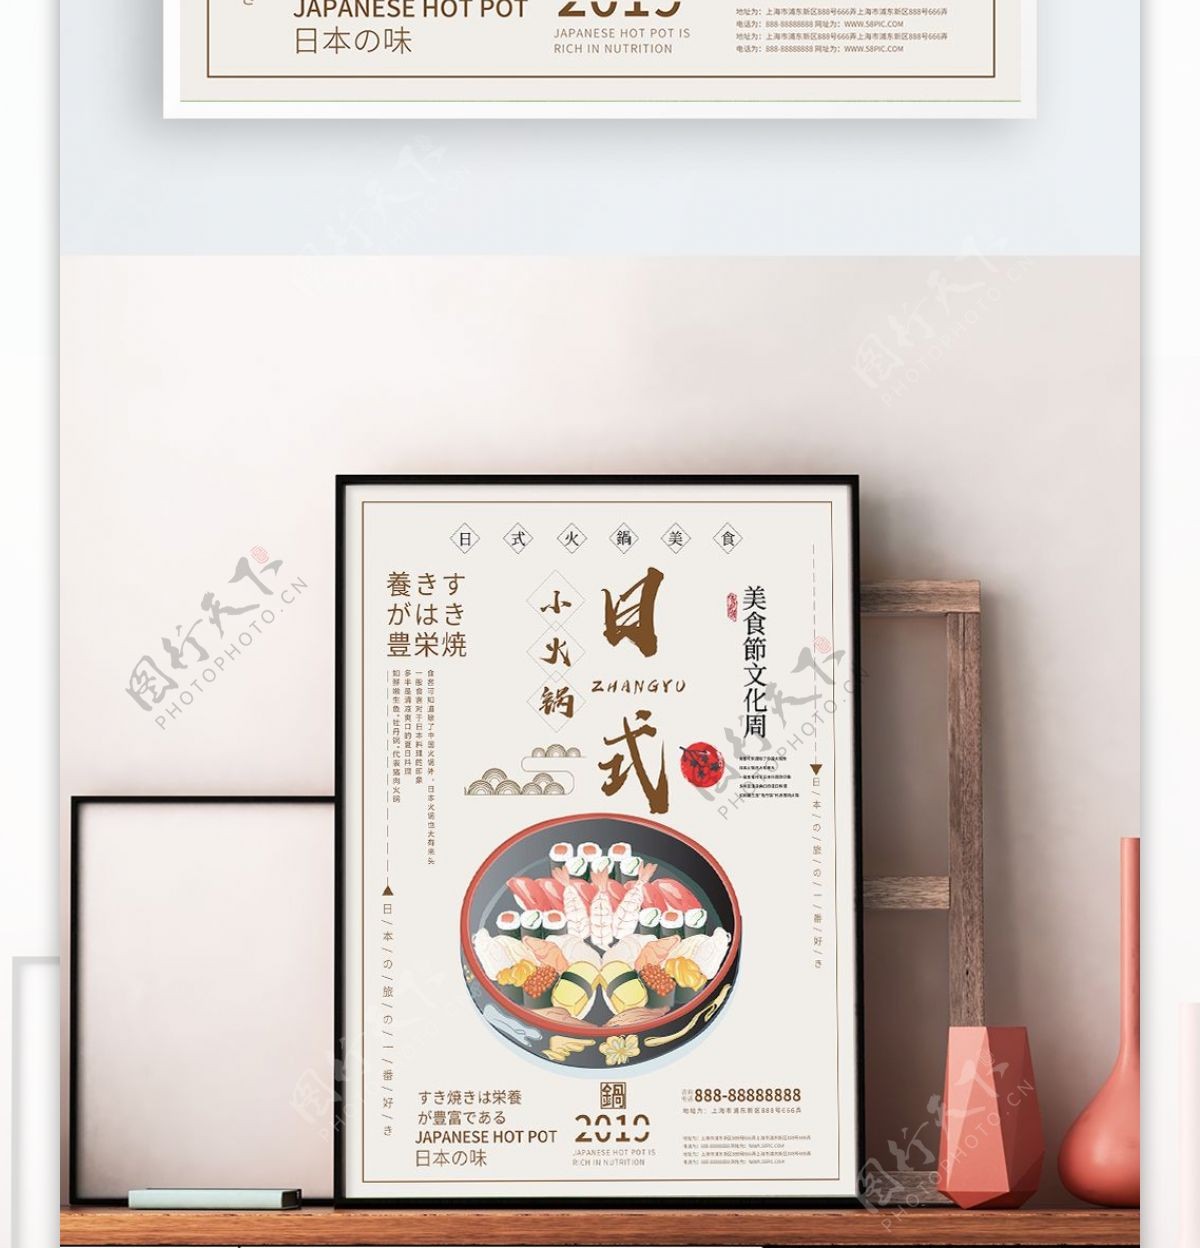 原创手绘排版日式美食海报促销